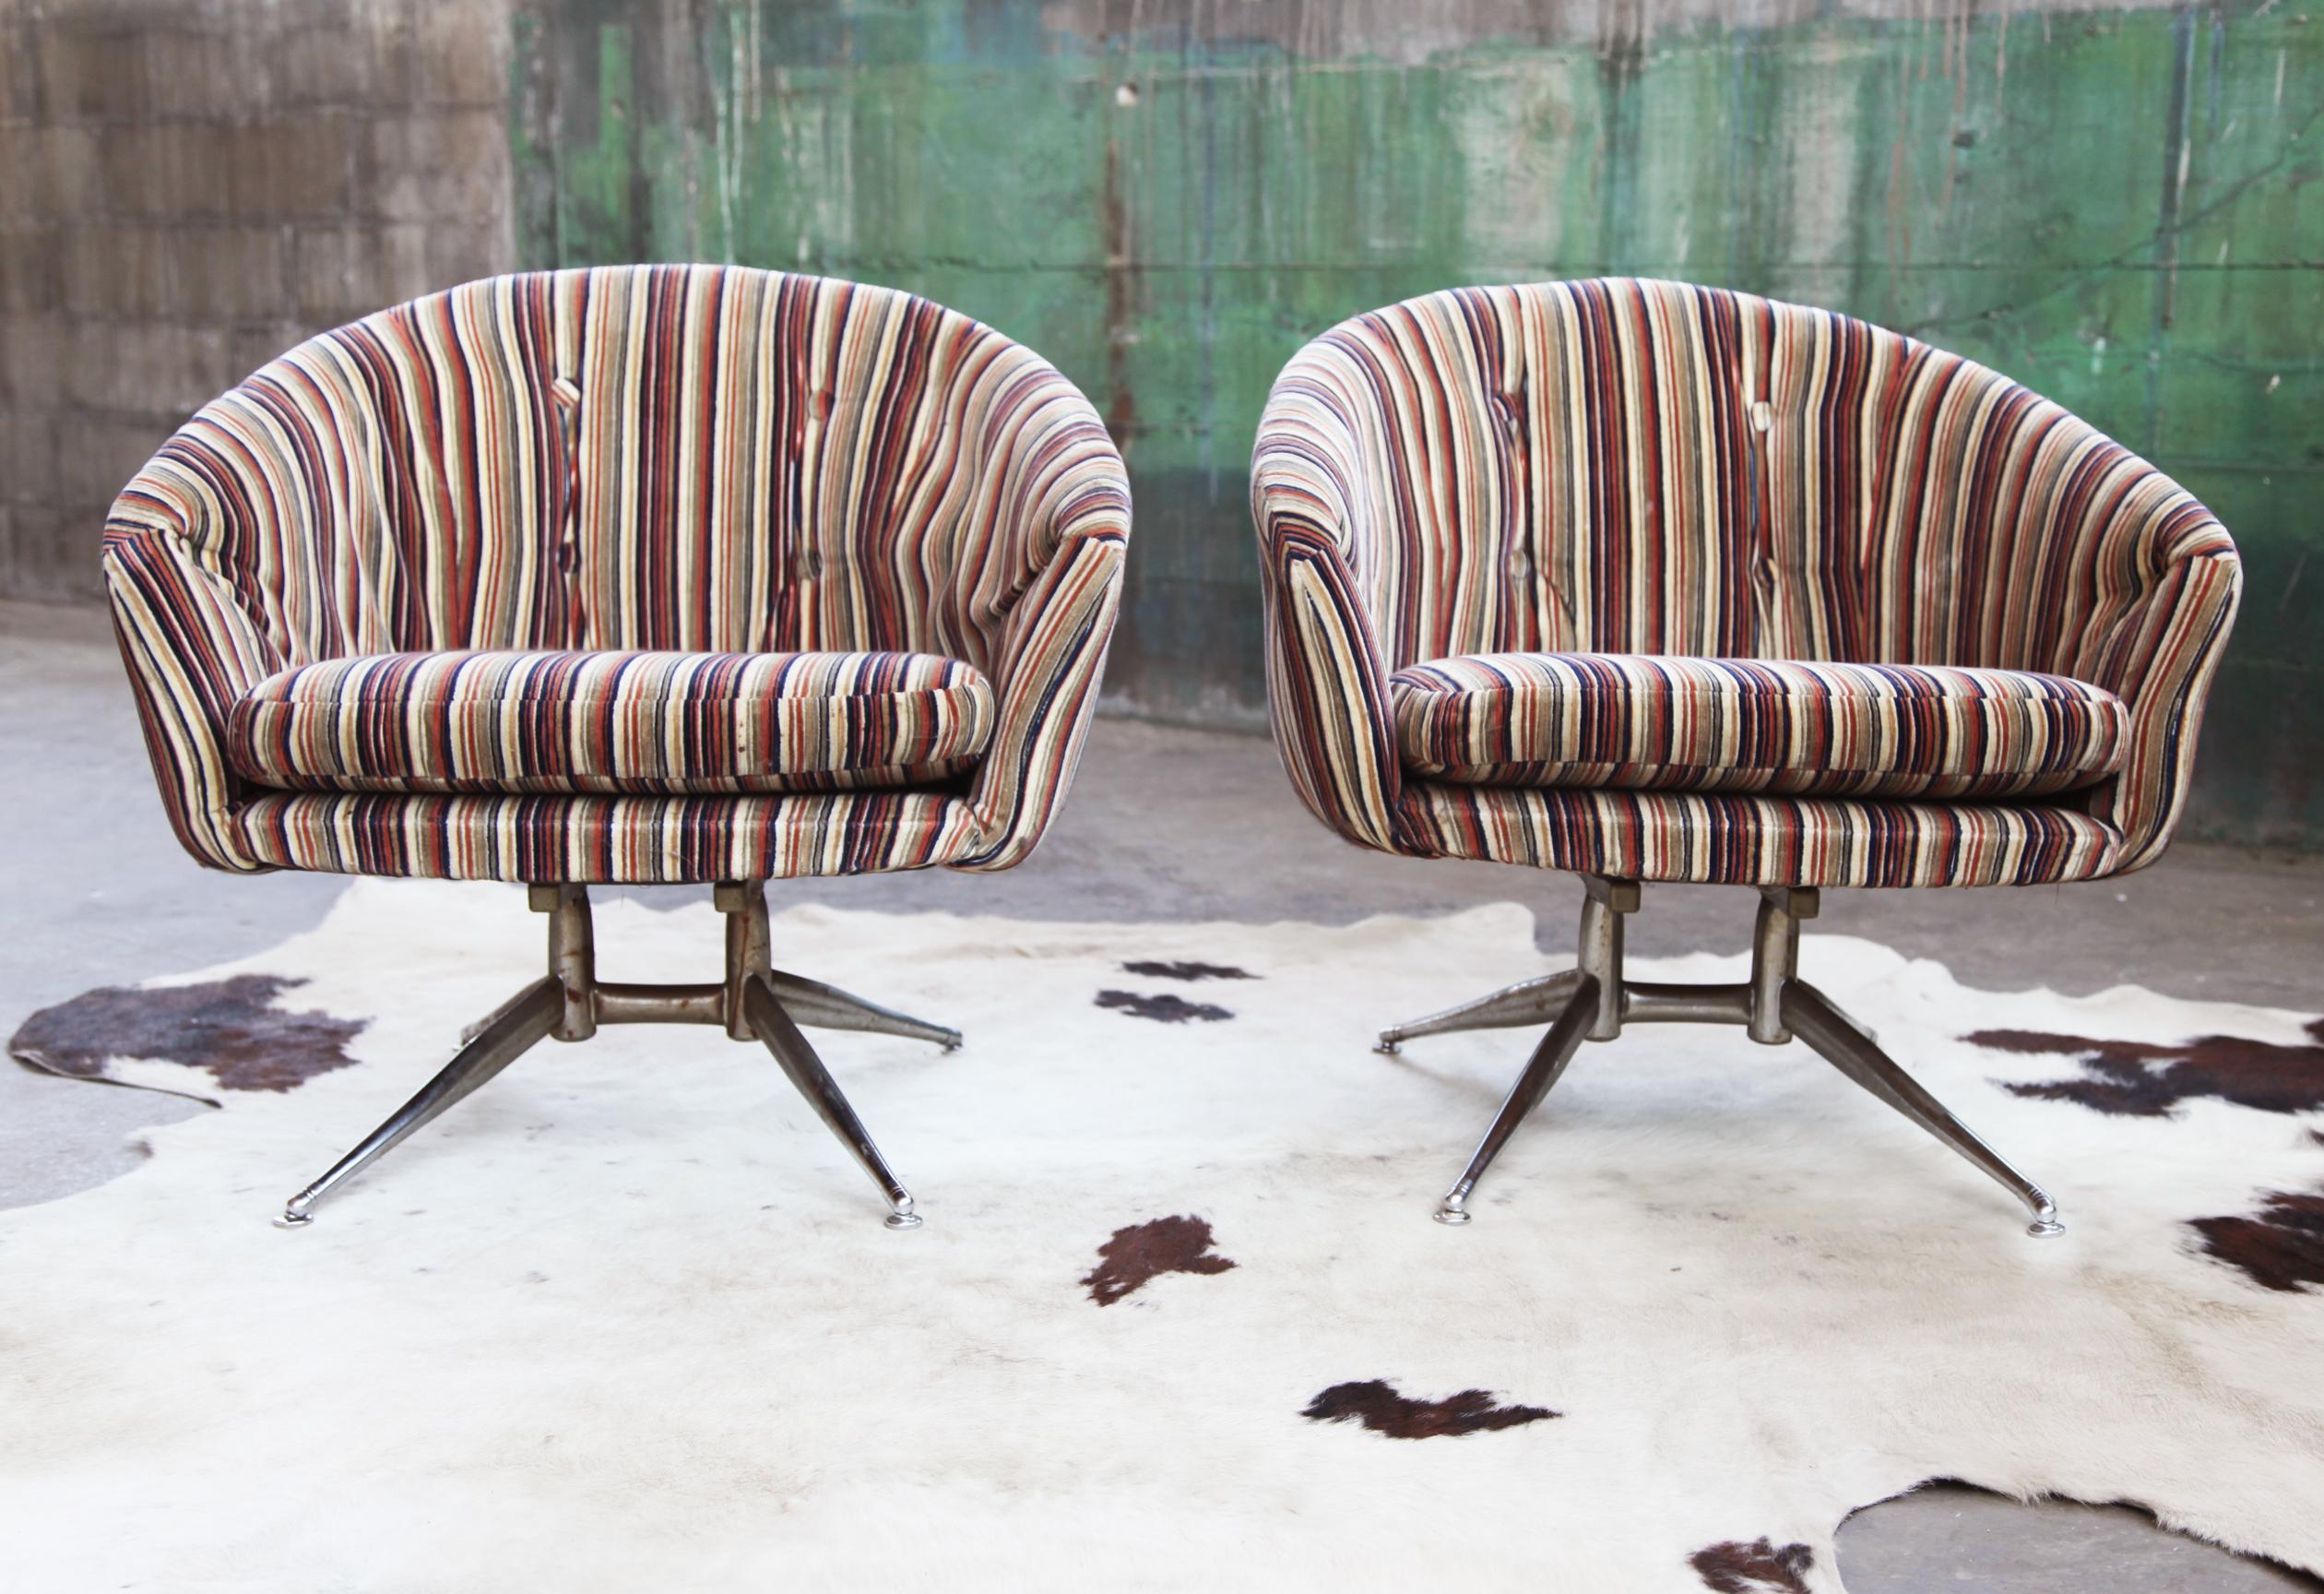 Voici une magnifique paire de chaises pivotantes rares, uniques et hautement collectionnables, attribuées à Lehigh Leopold pour Ward Bennett. Il est extrêmement difficile de trouver des chaises comme celle-ci dans un état aussi merveilleux !

Note :